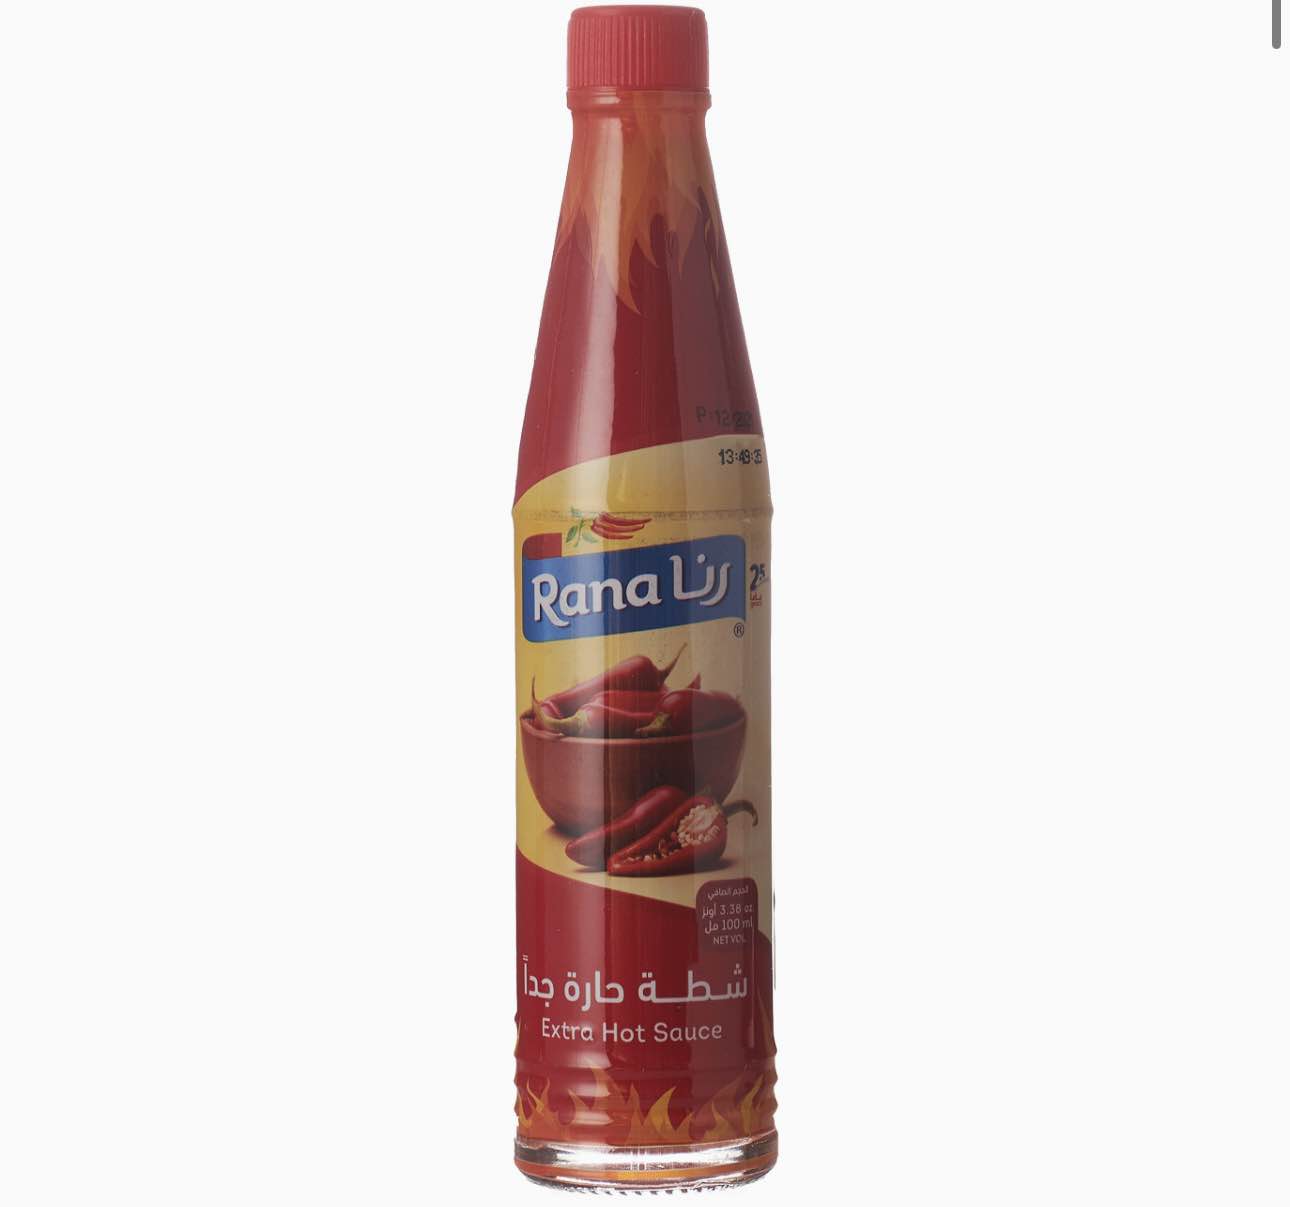 เครื่องปรุงรส Rana Extra Hot Sauce 100ml   ราน่า เอ็กซตร้า ฮอต ซอส 100 มล.